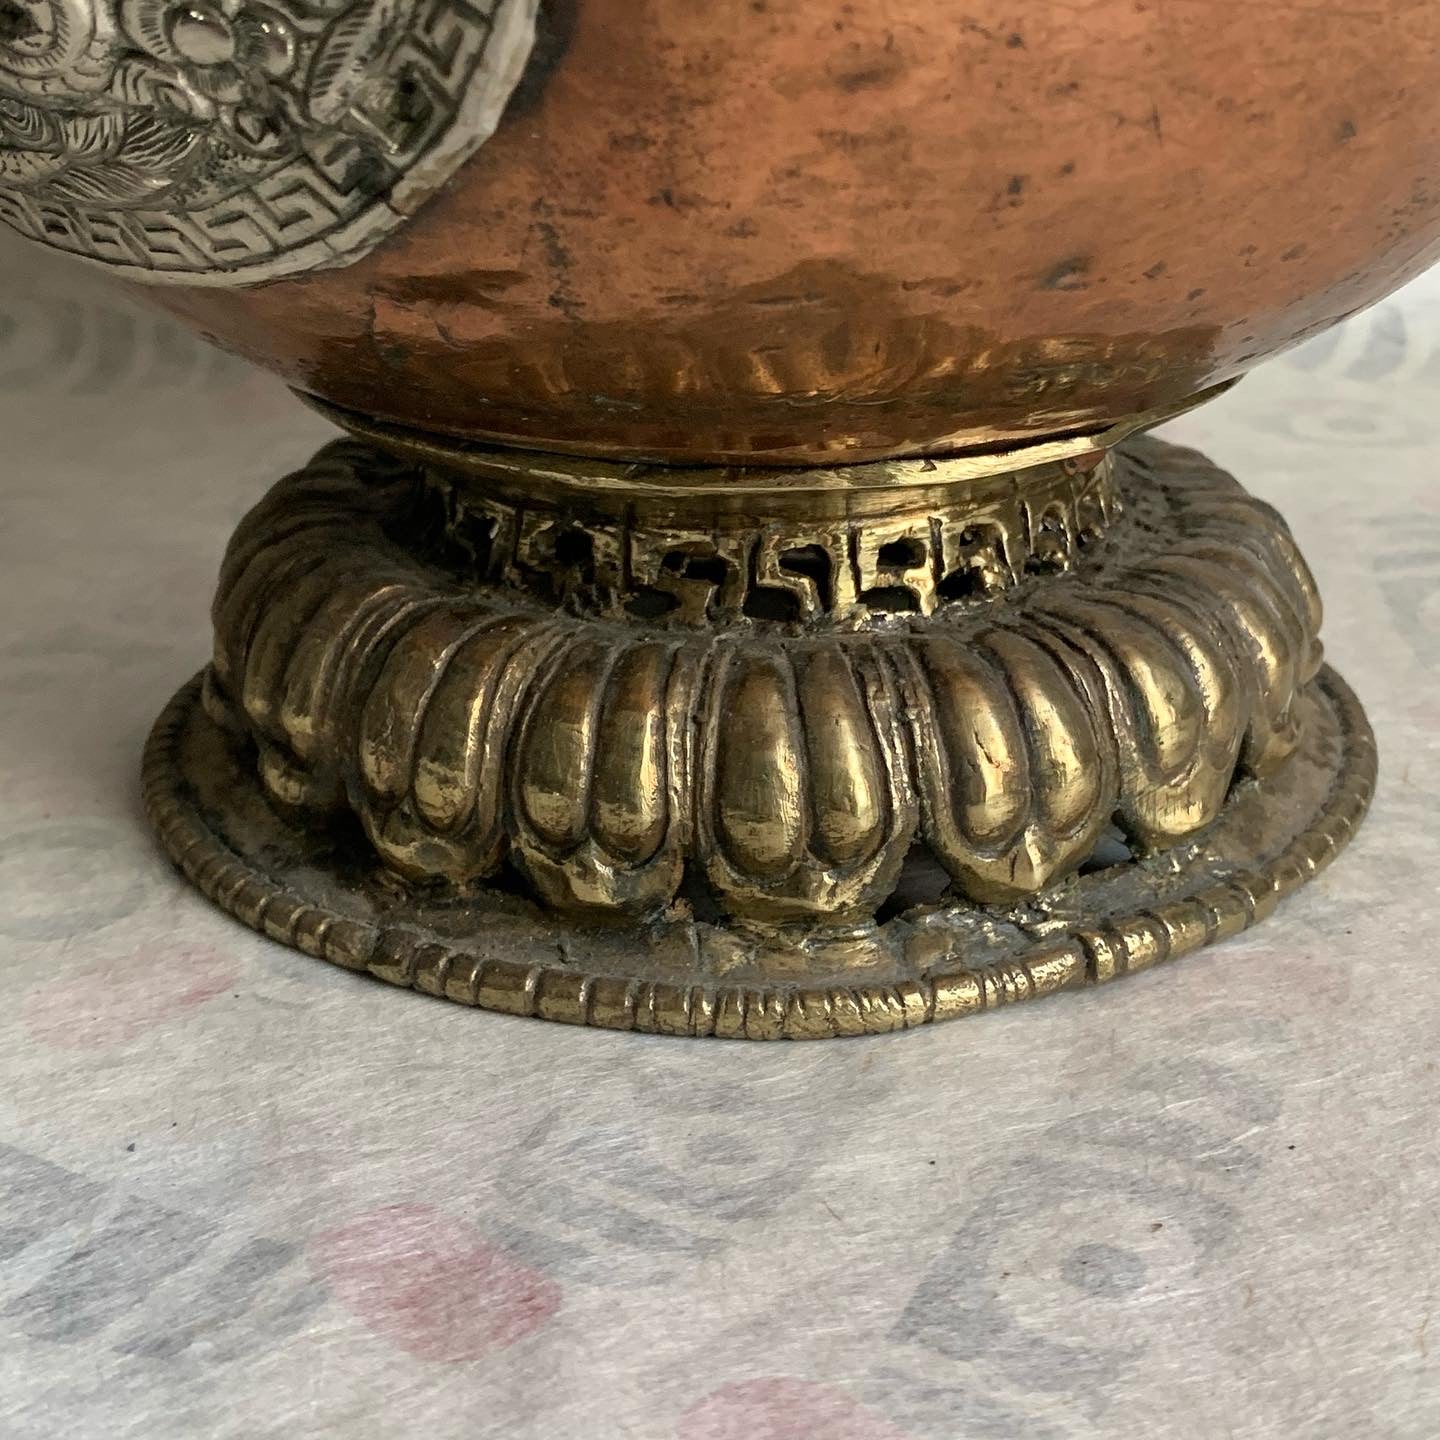 An antique Tibetan Teapot